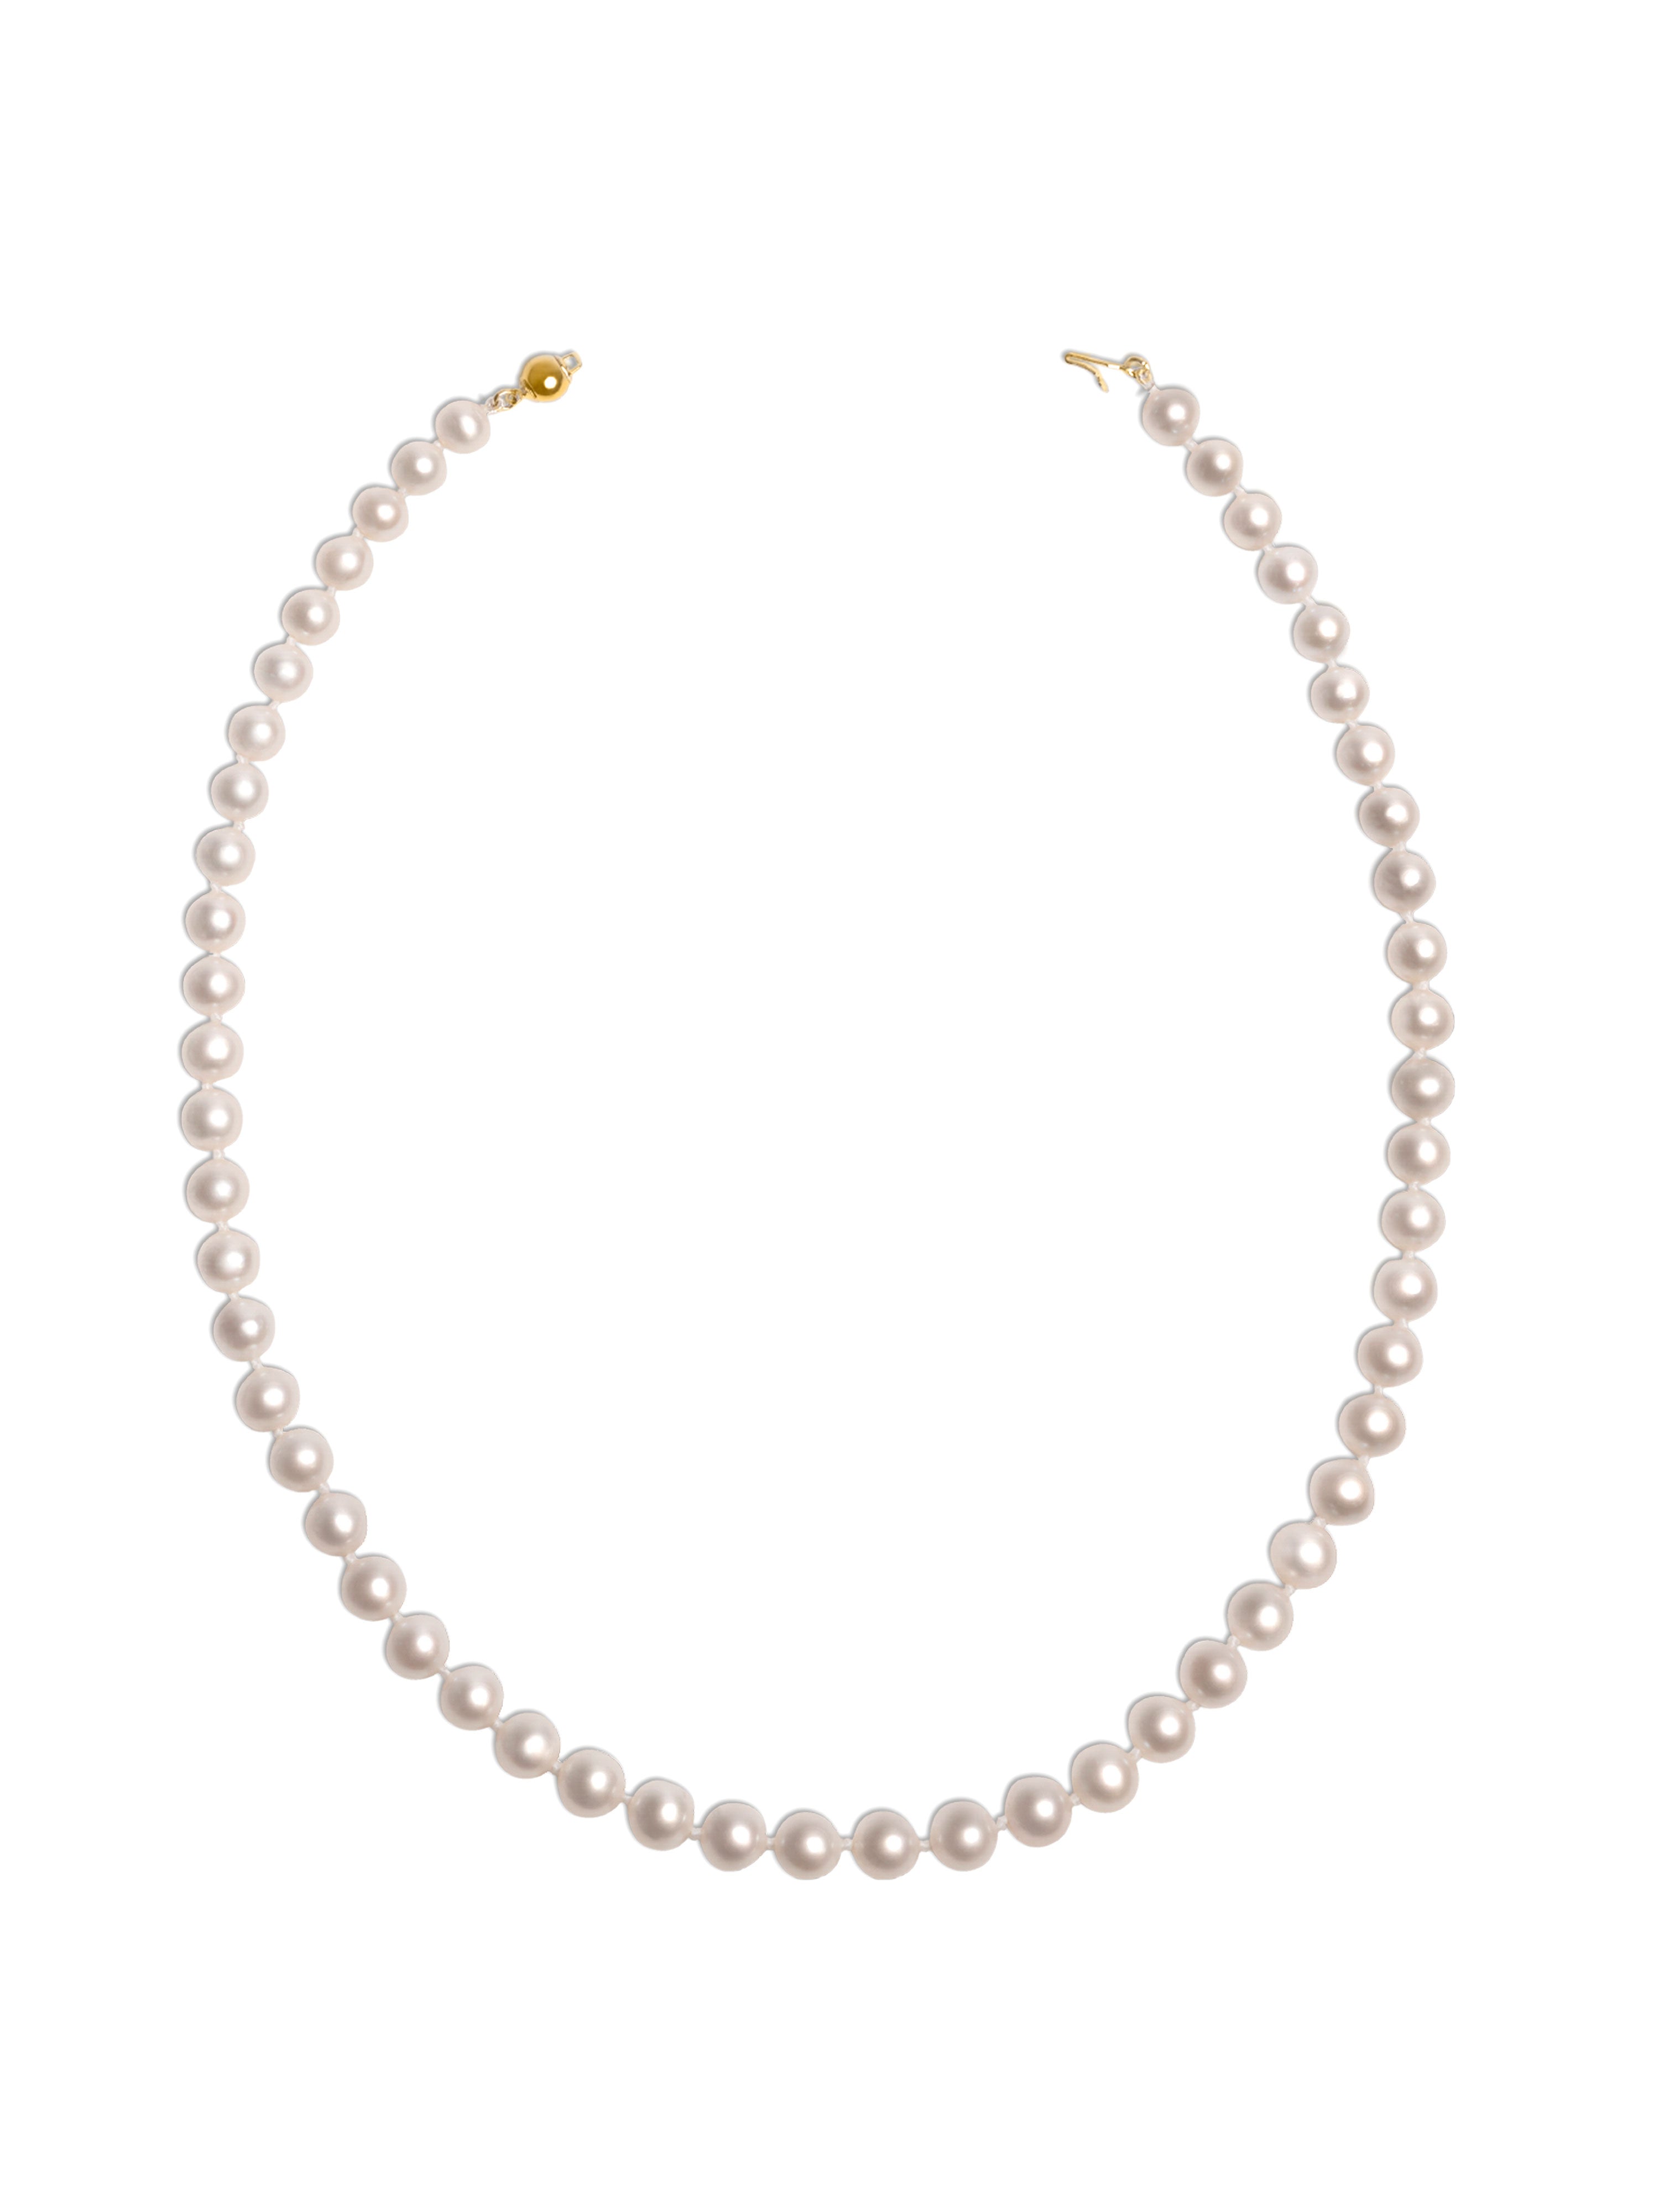 Collar de Perlas Cultivadas de Agua Dulce AAA de 6,5-7,5 mm, 90 cm de largo | Oro 18K